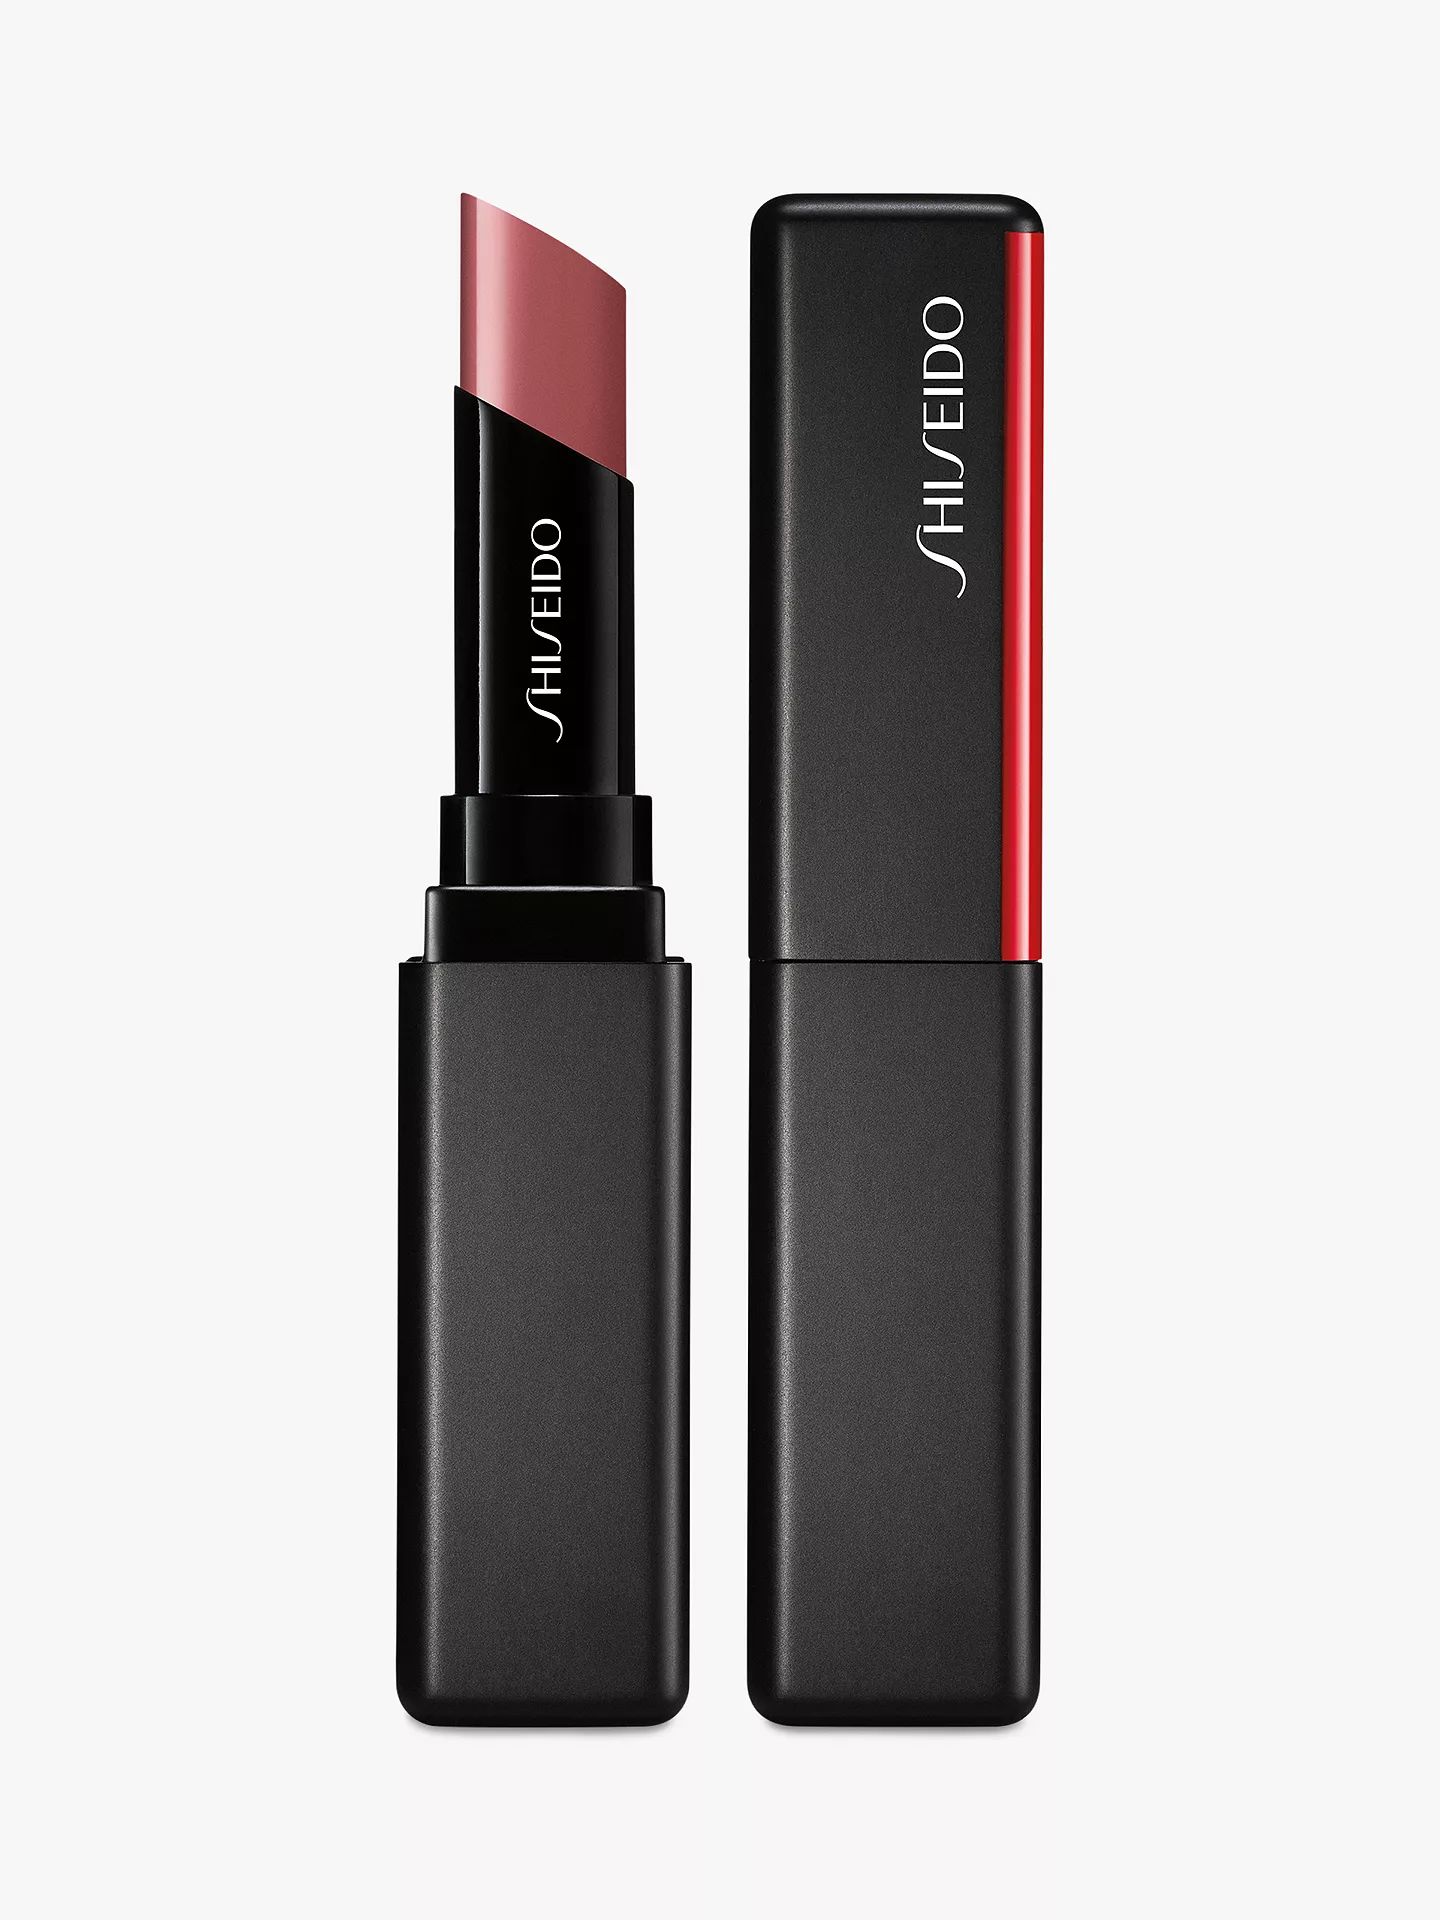 Shiseido VisionAiry Gel Lipstick, 202 Bullet Train | John Lewis UK